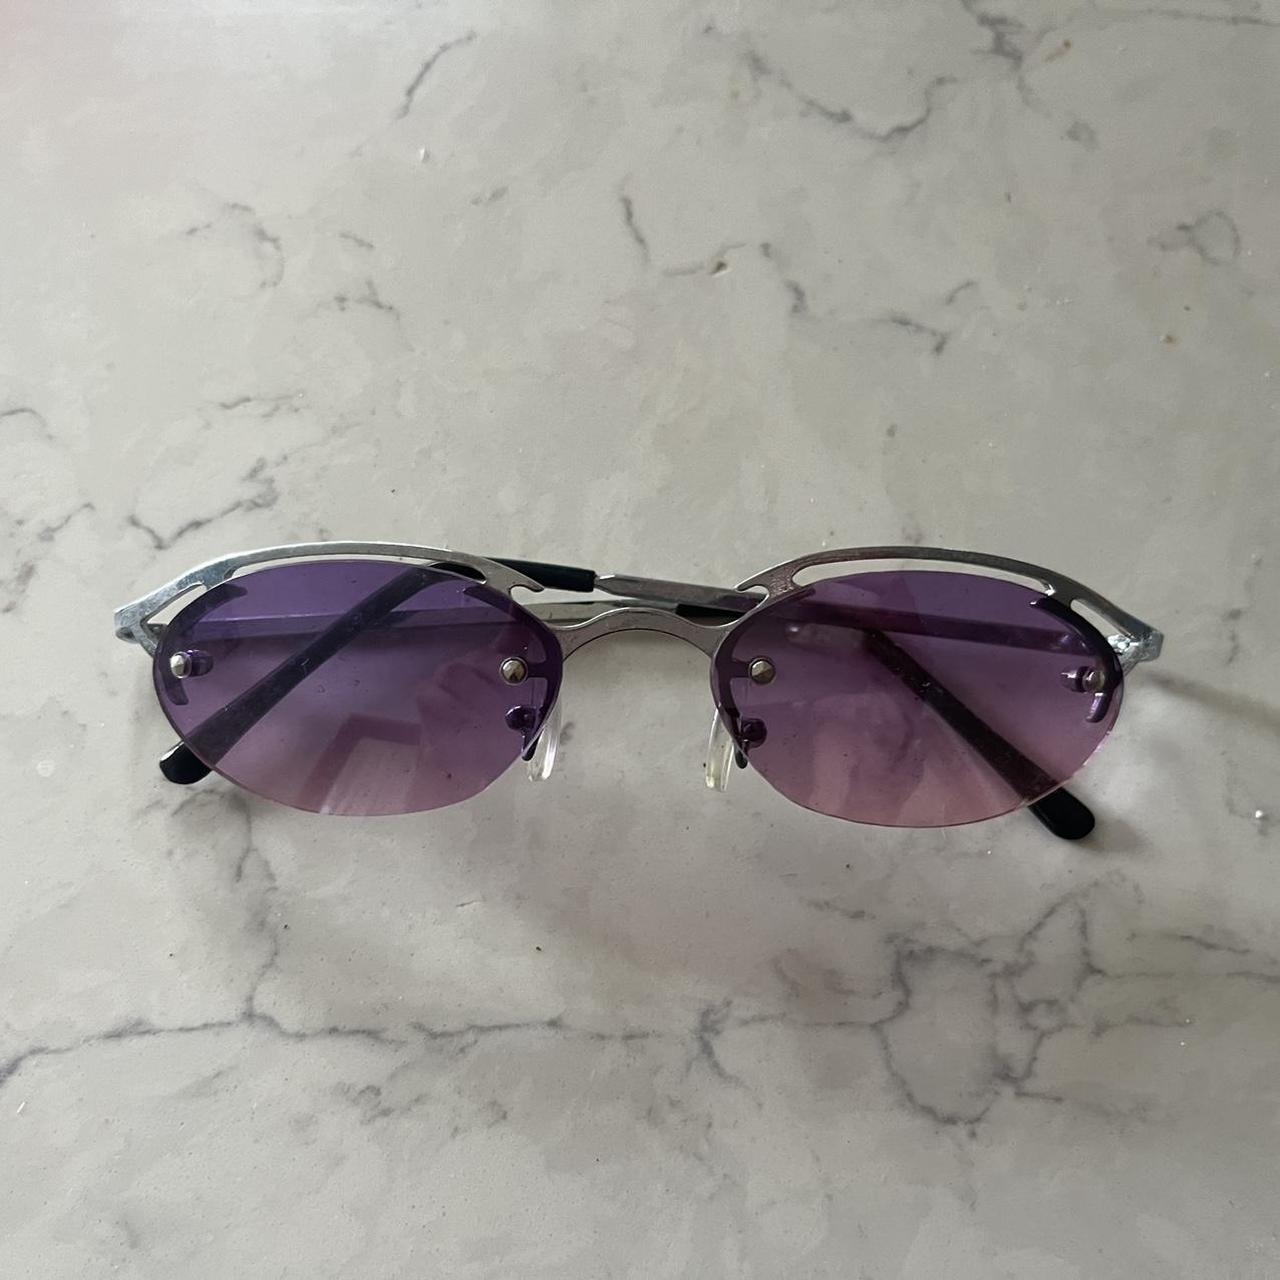 Vintage 90’s authentic sunglasses deadstock! - Depop